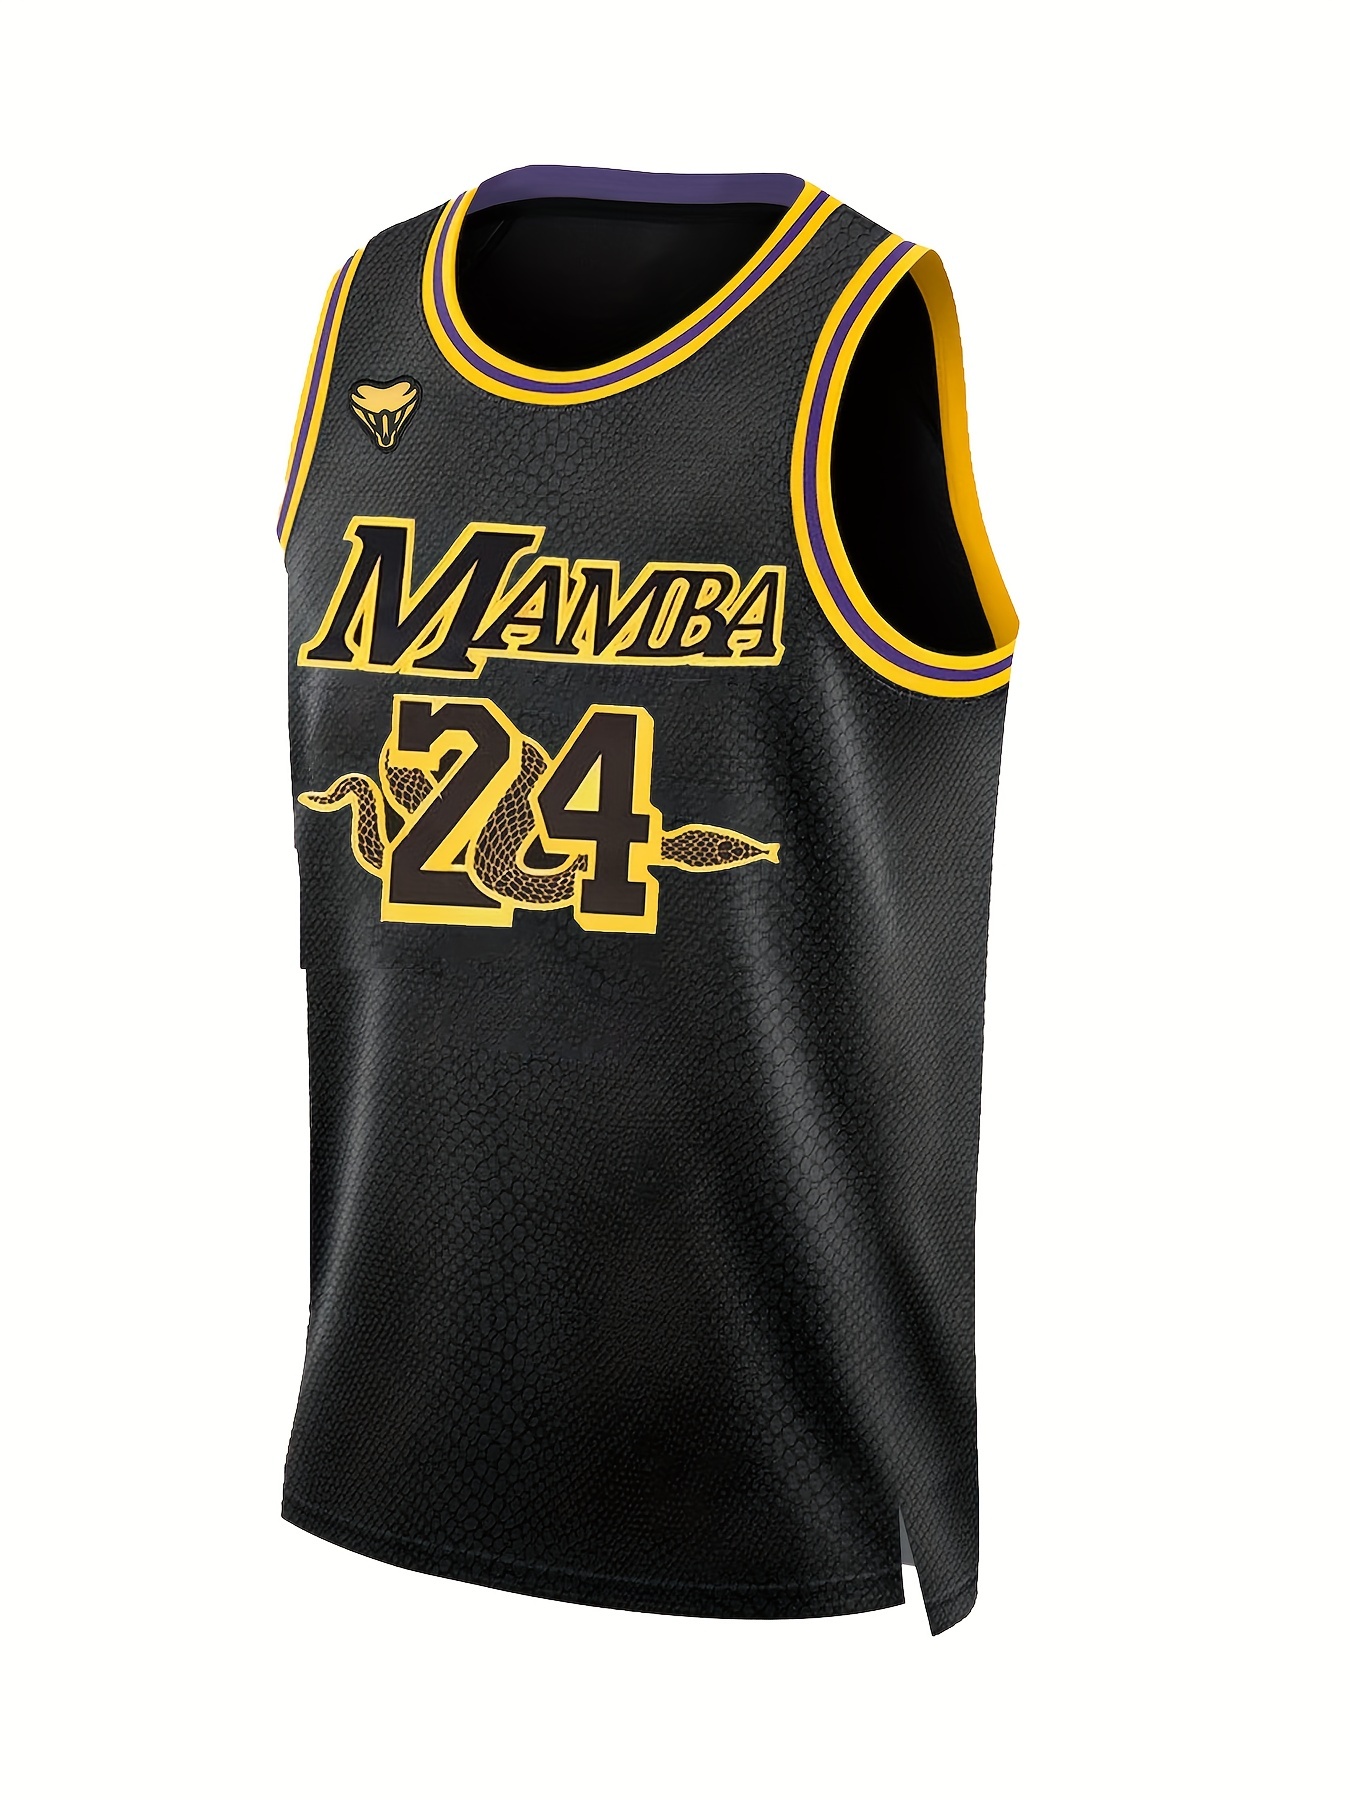 Legend 8 Athletic 24 Mamba Men's Fashion Basketball Jersey Size M 